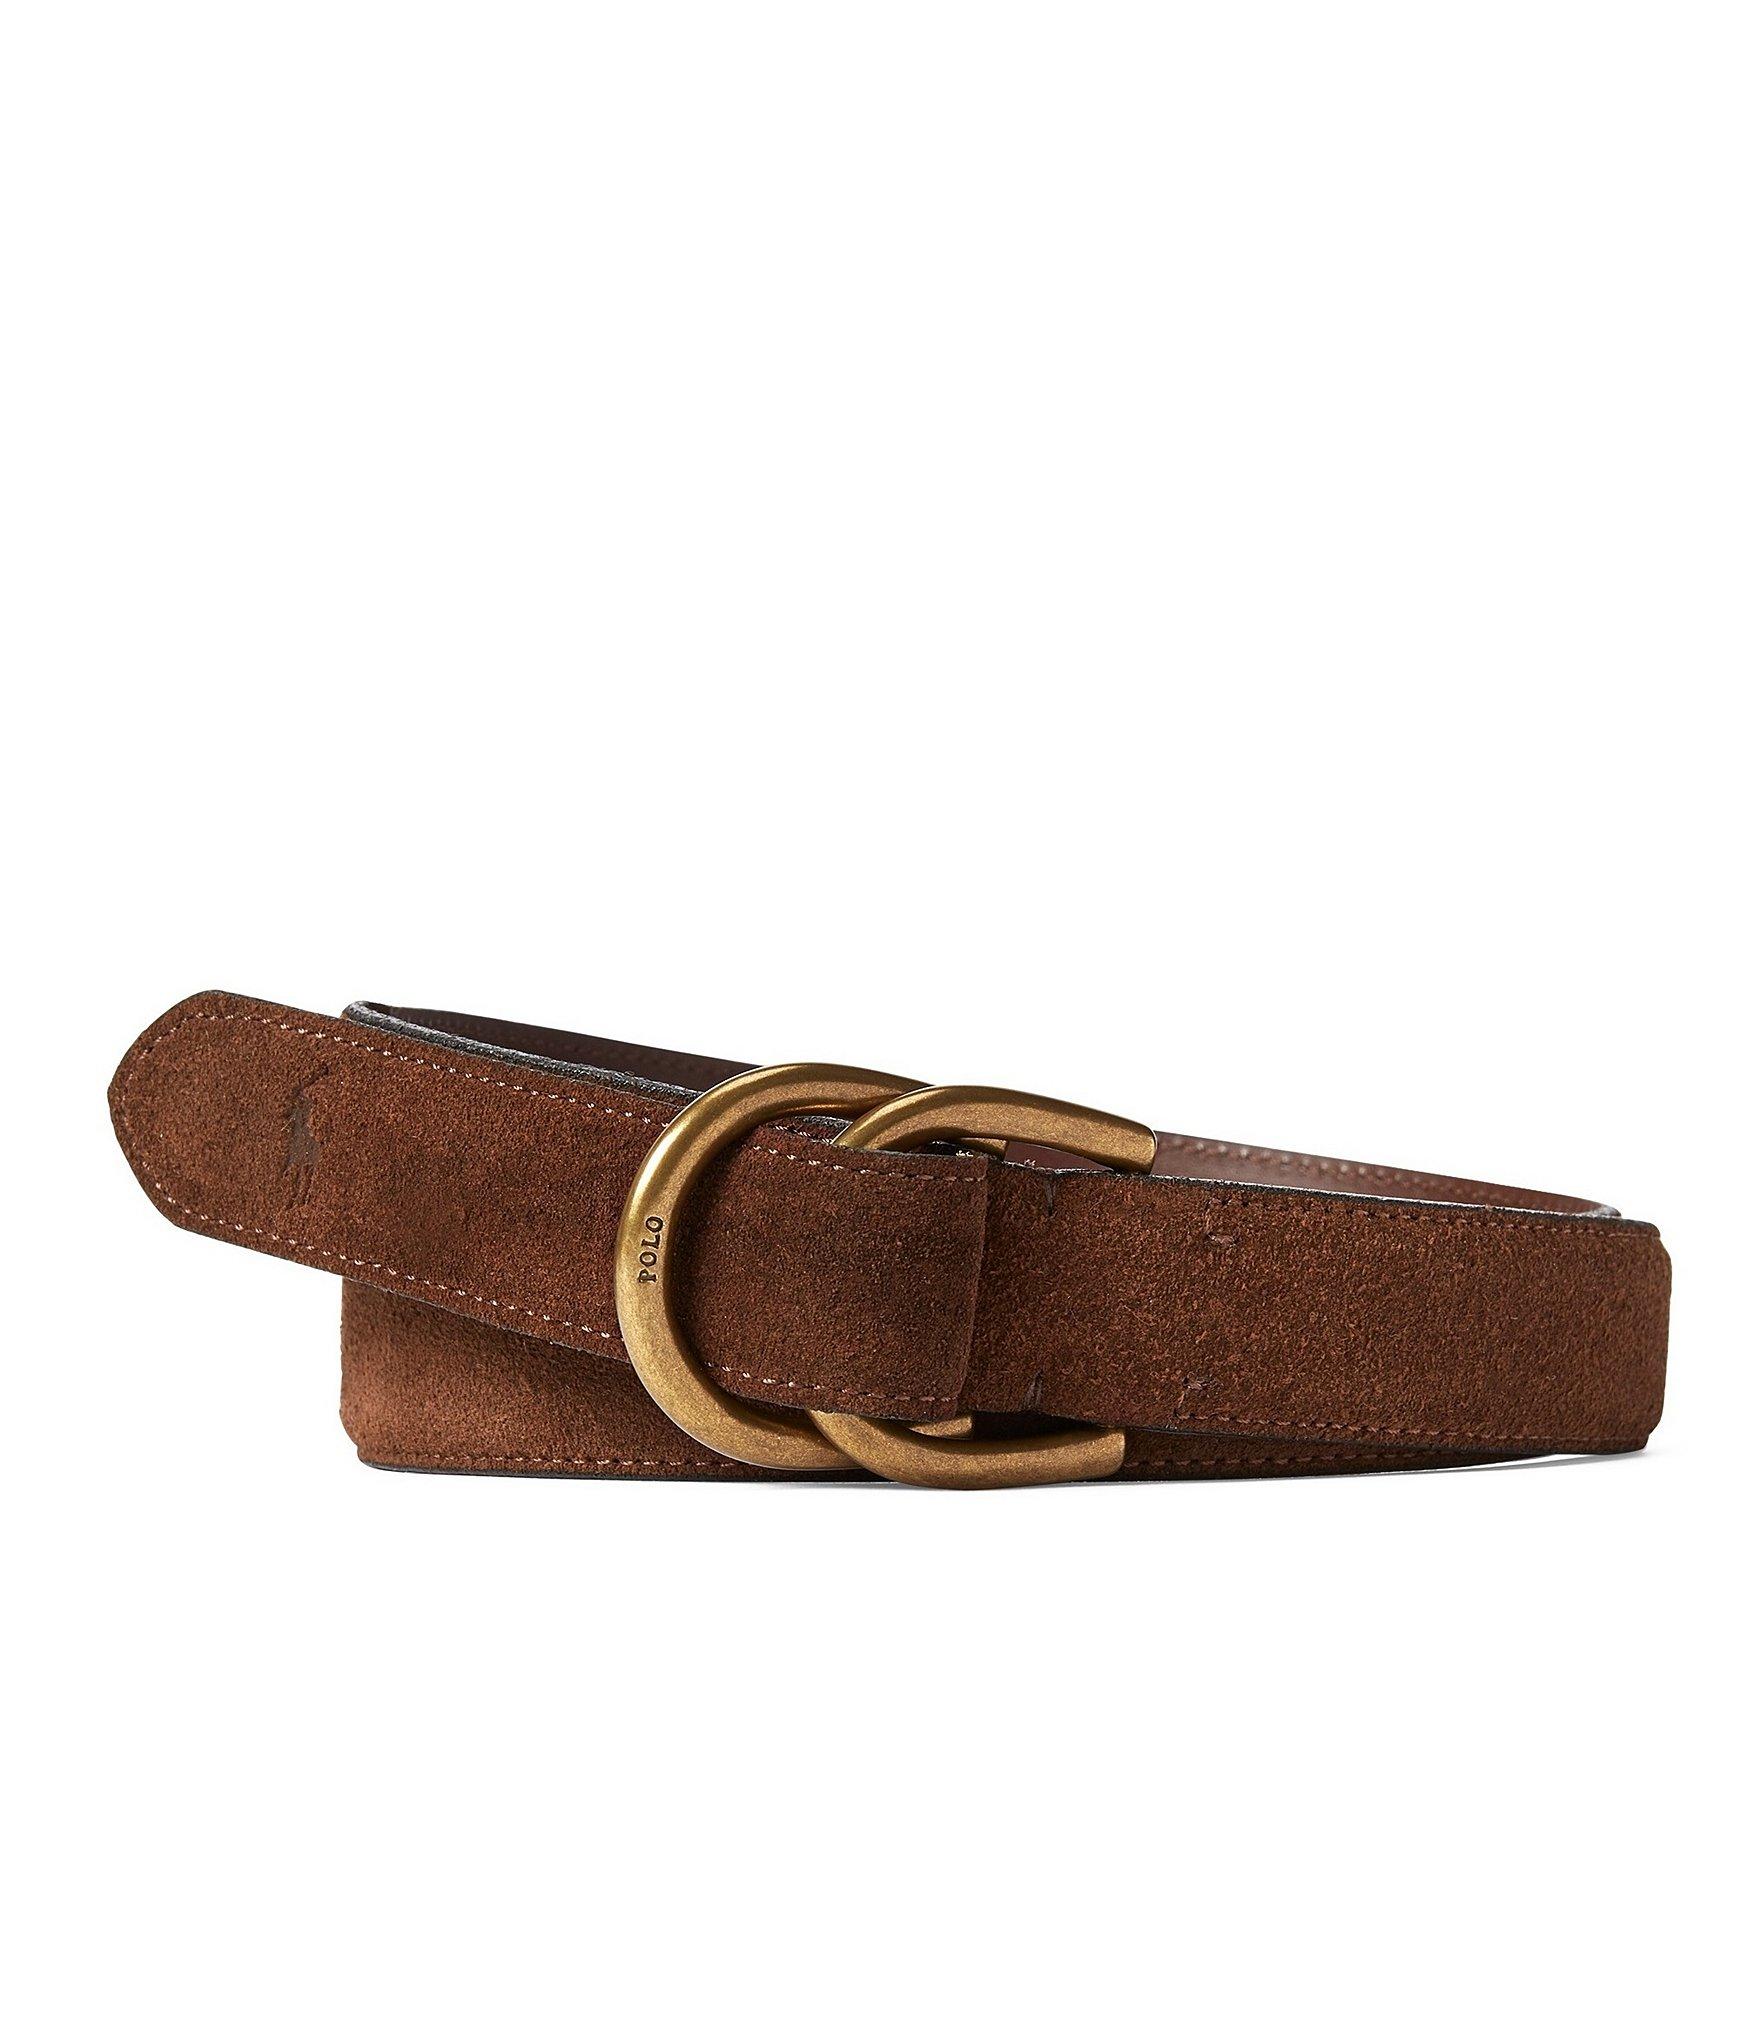 Polo Ralph Lauren Suede D-ring Belt in Brown for Men - Lyst